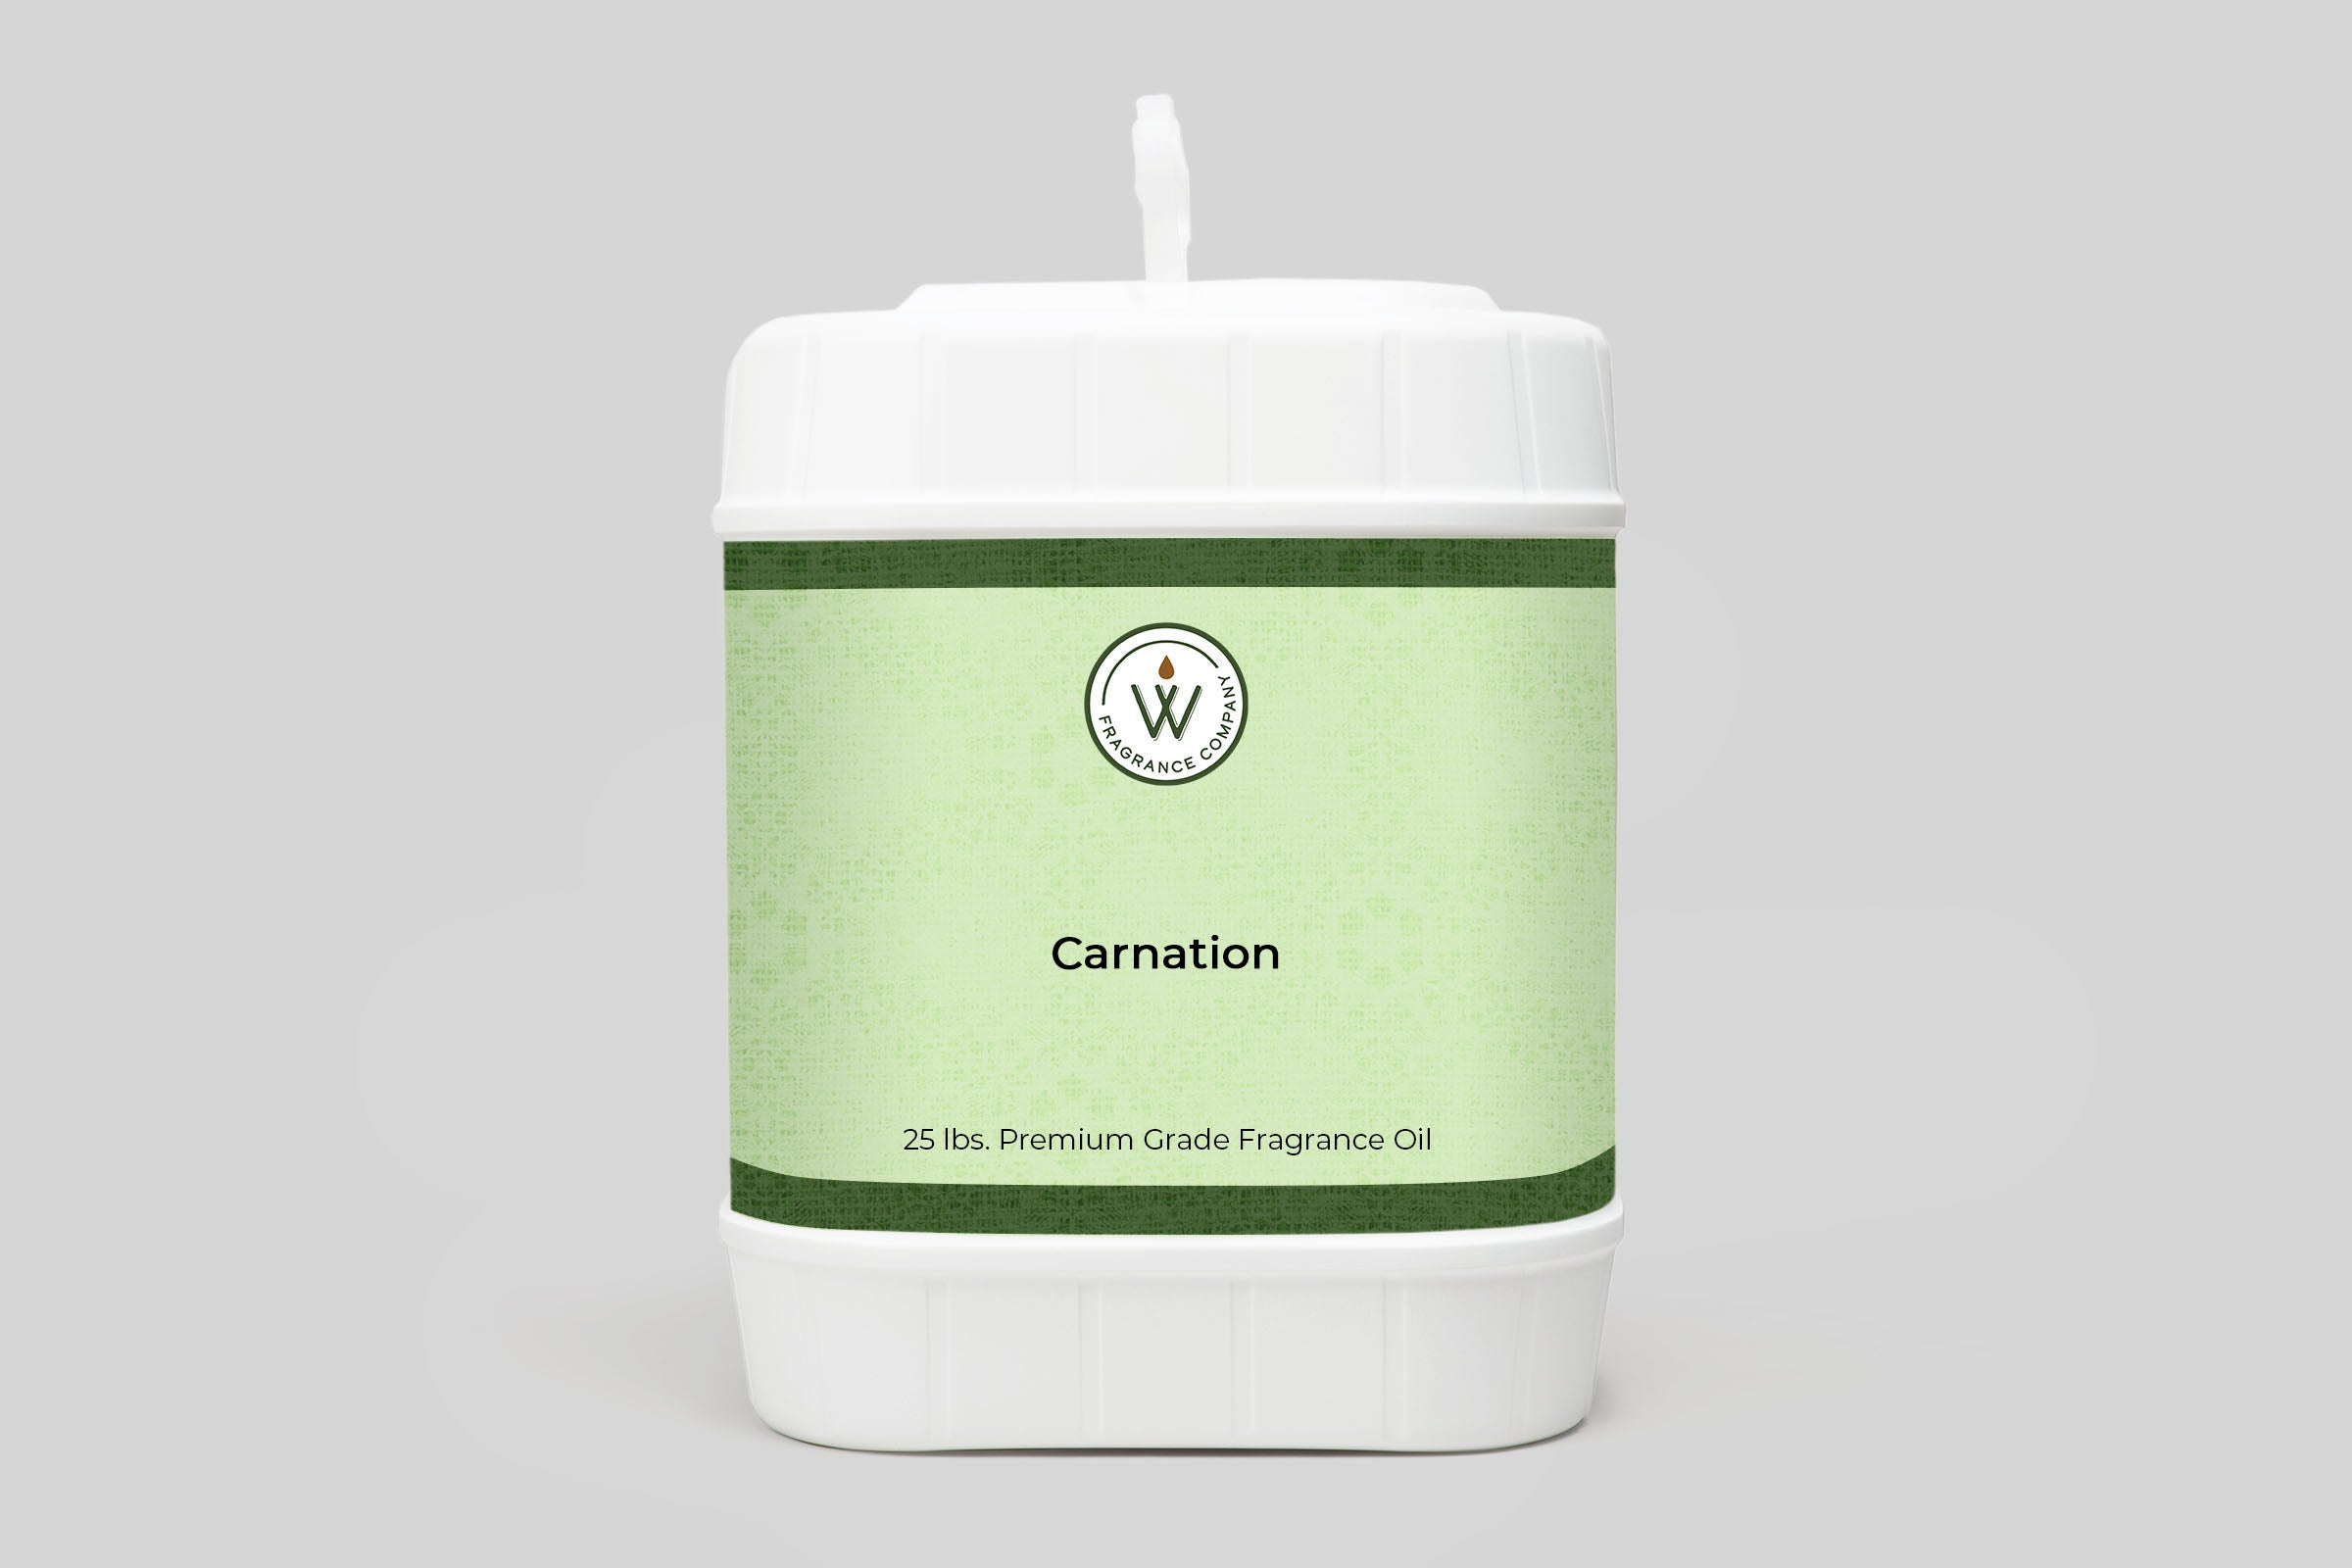 Carnation Fragrance Oil